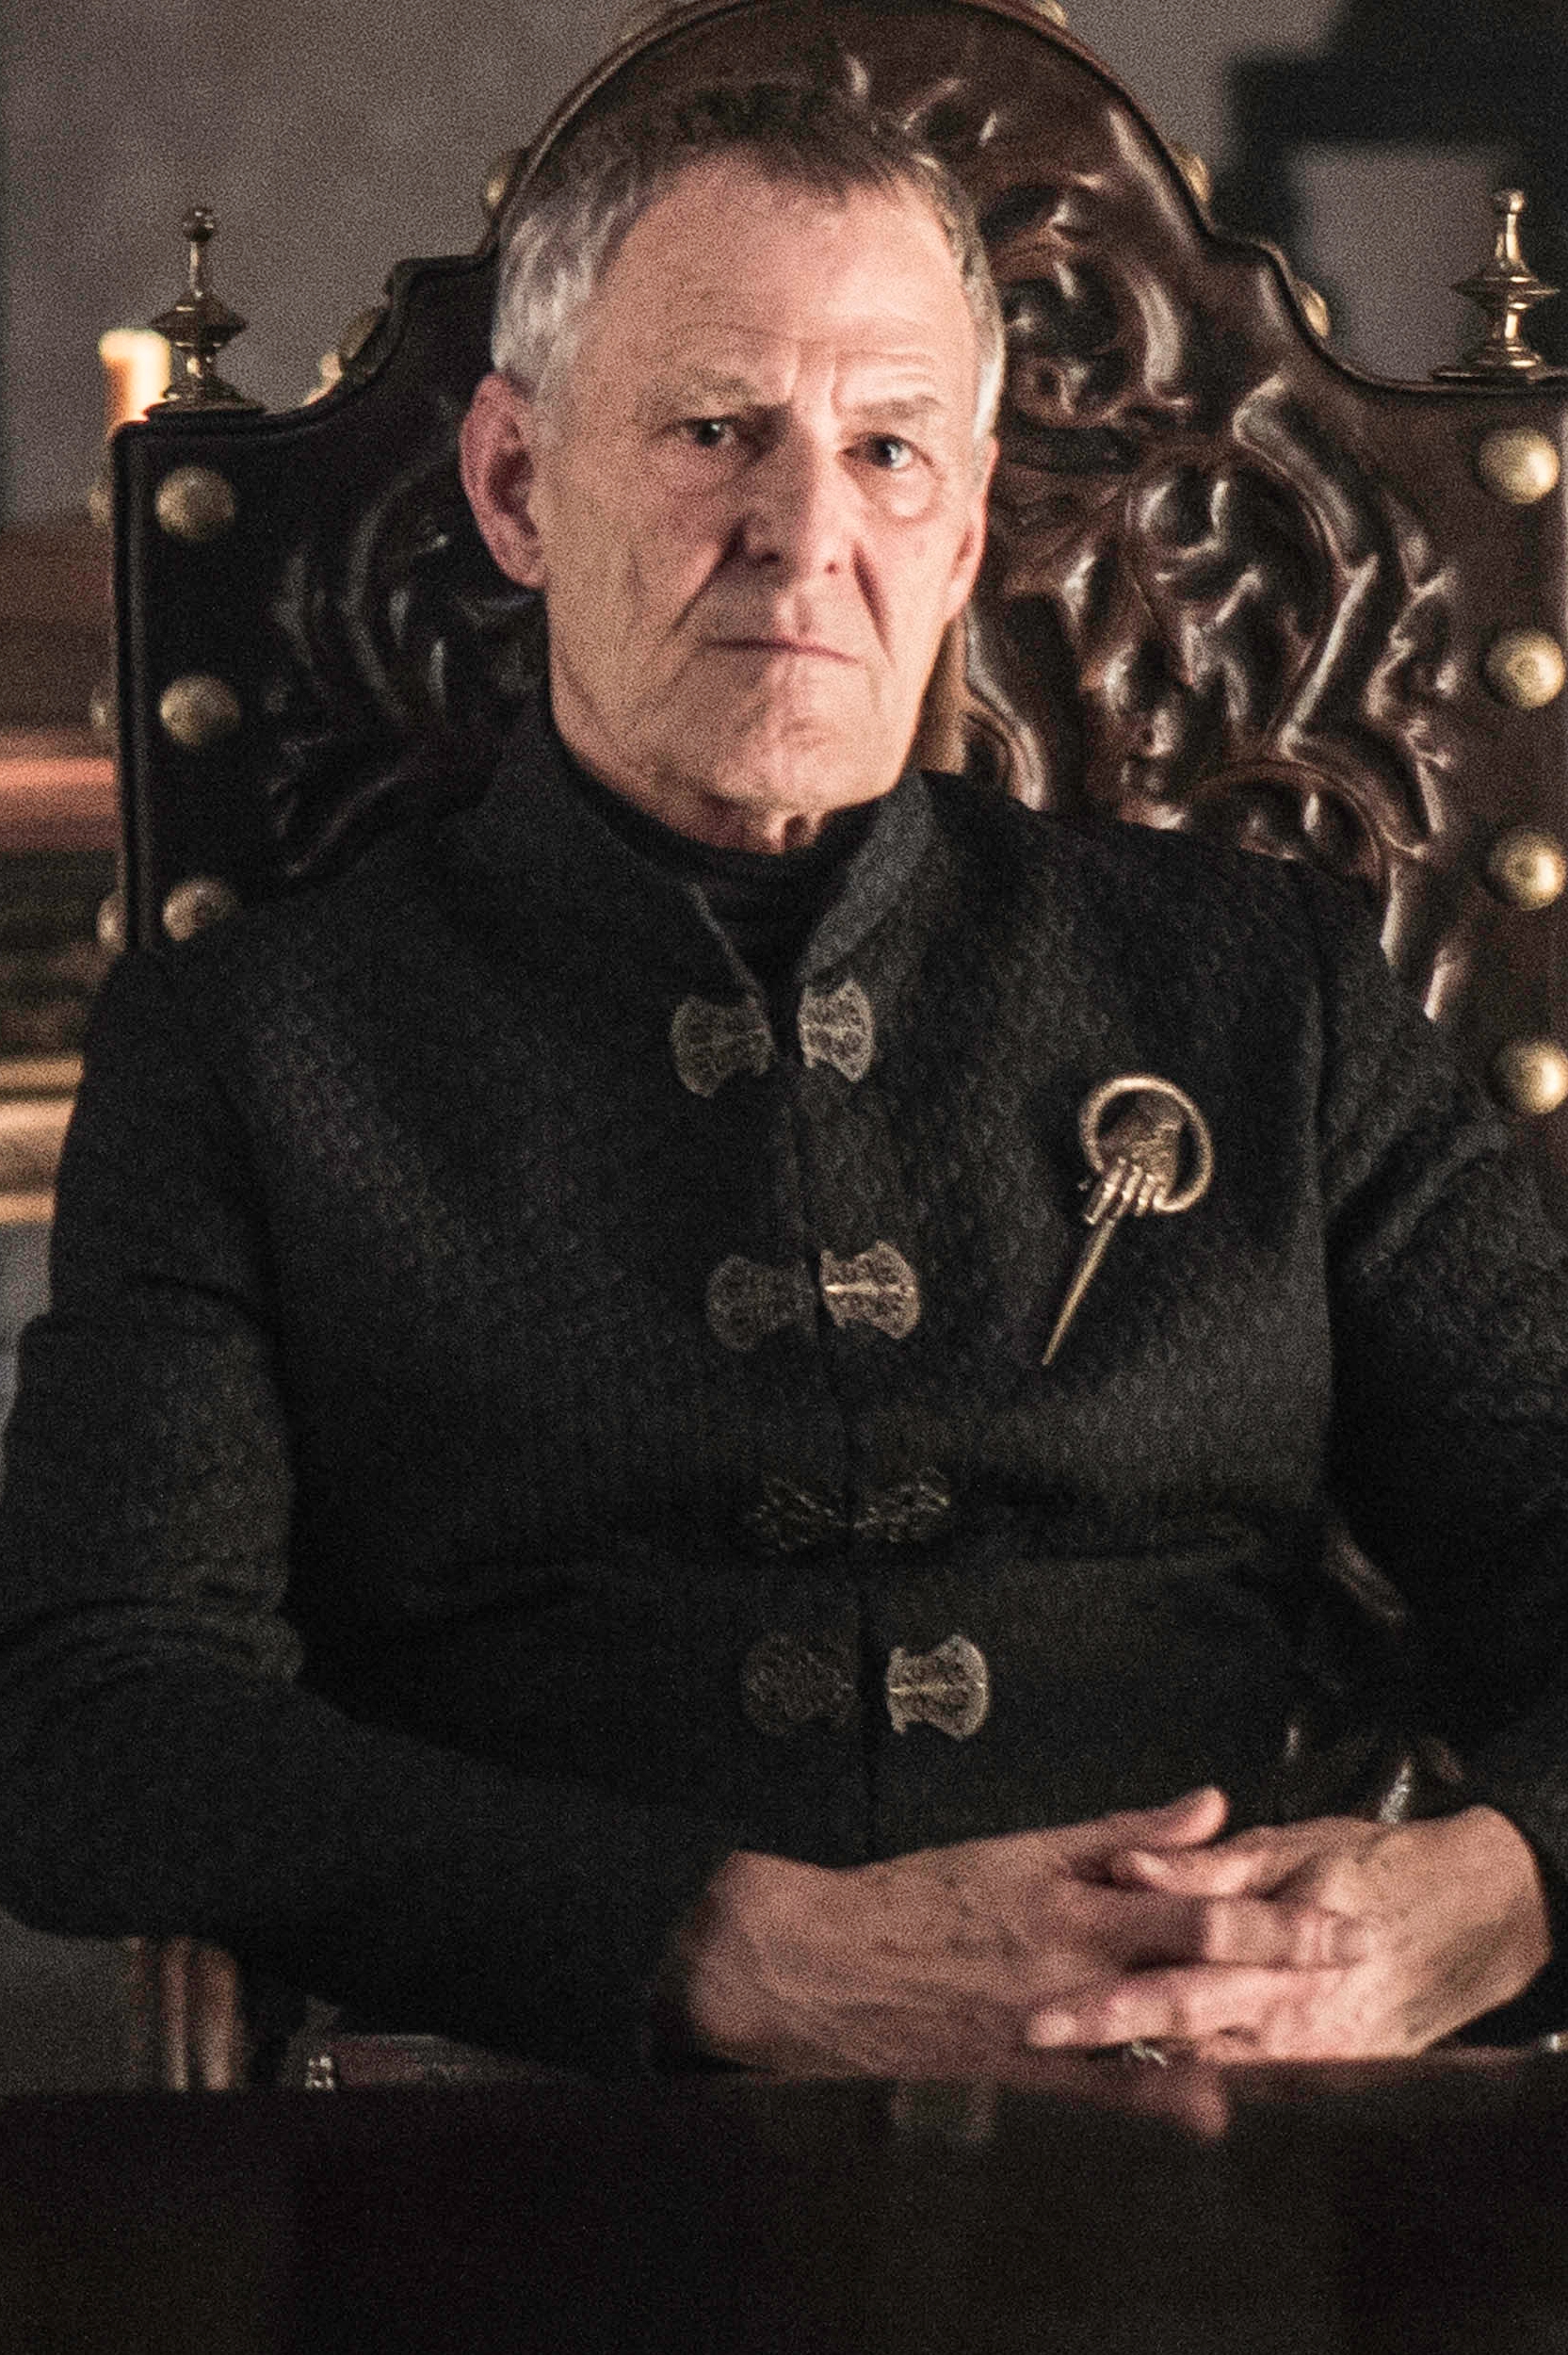 Kevan Lannister